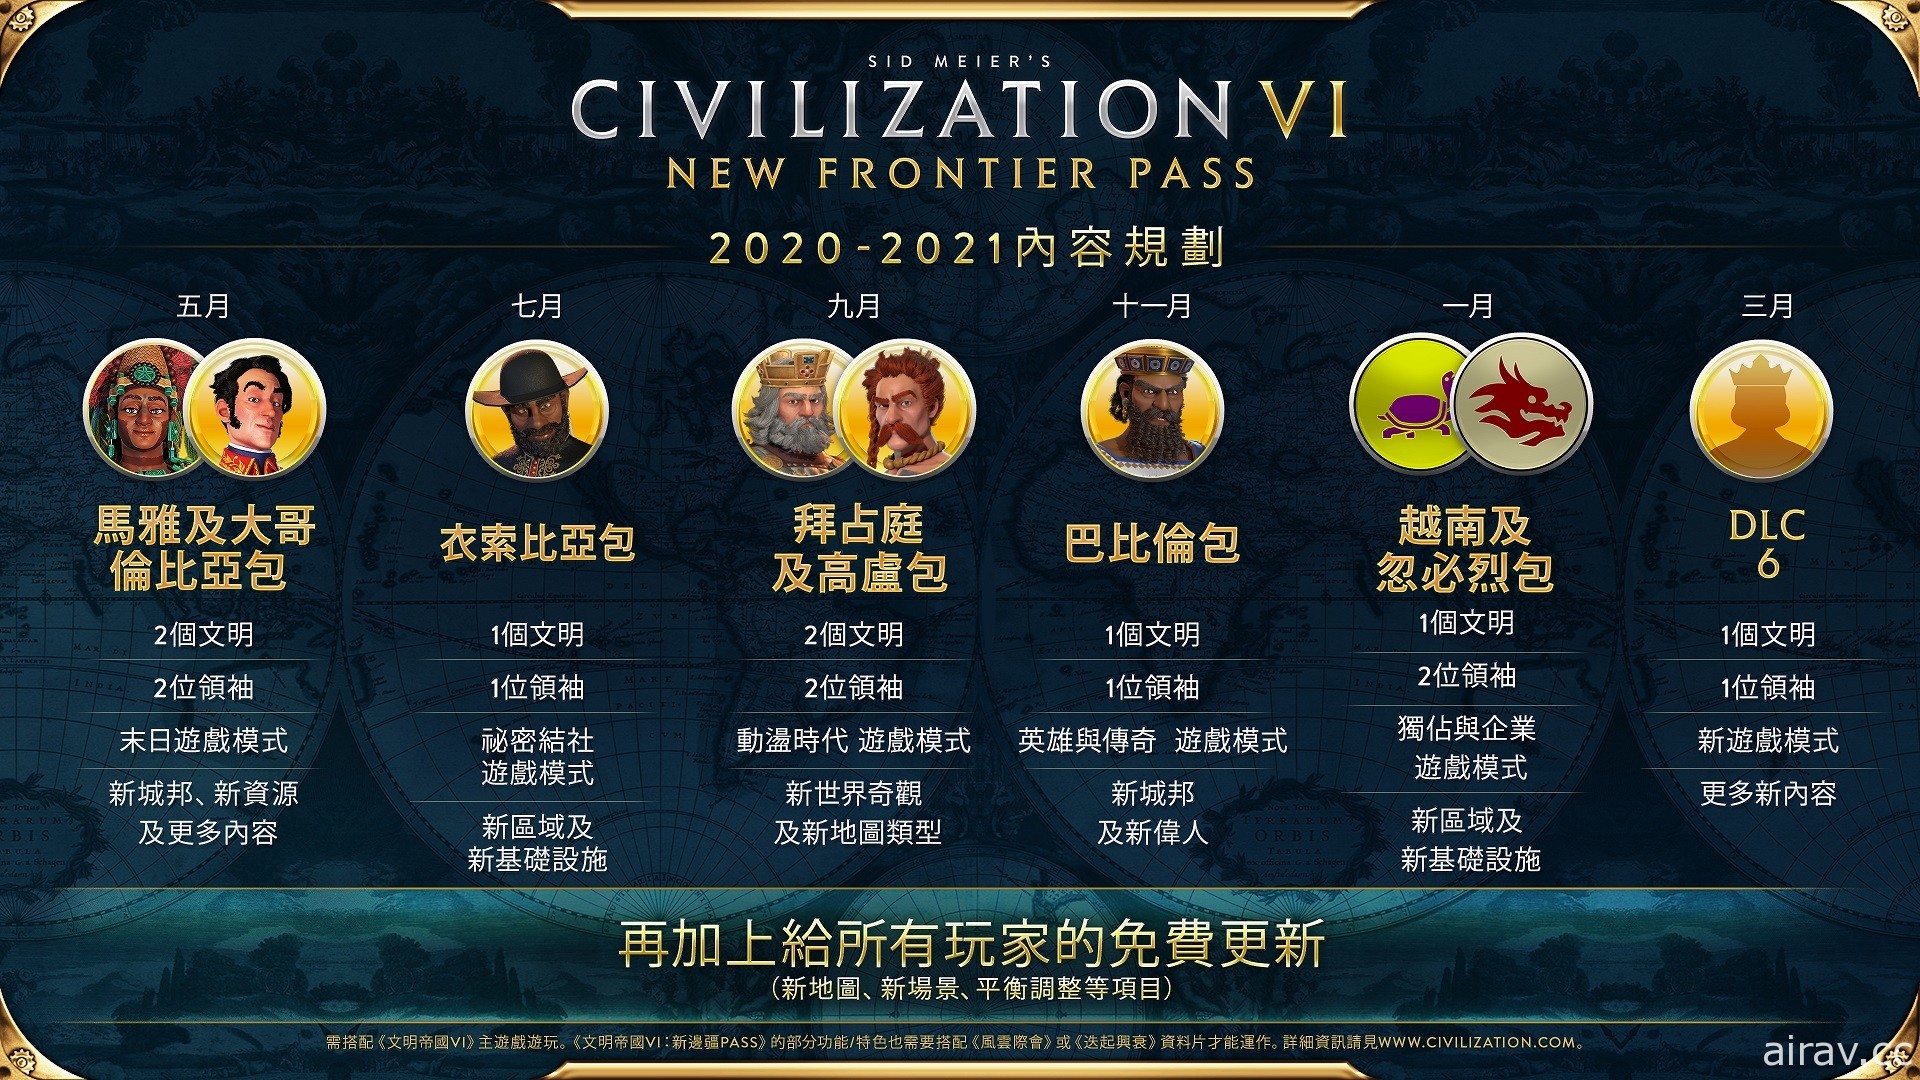 《文明帝国 6》边疆季票第五款 DLC“越南及忽必烈包”即将推出 新内容抢先看